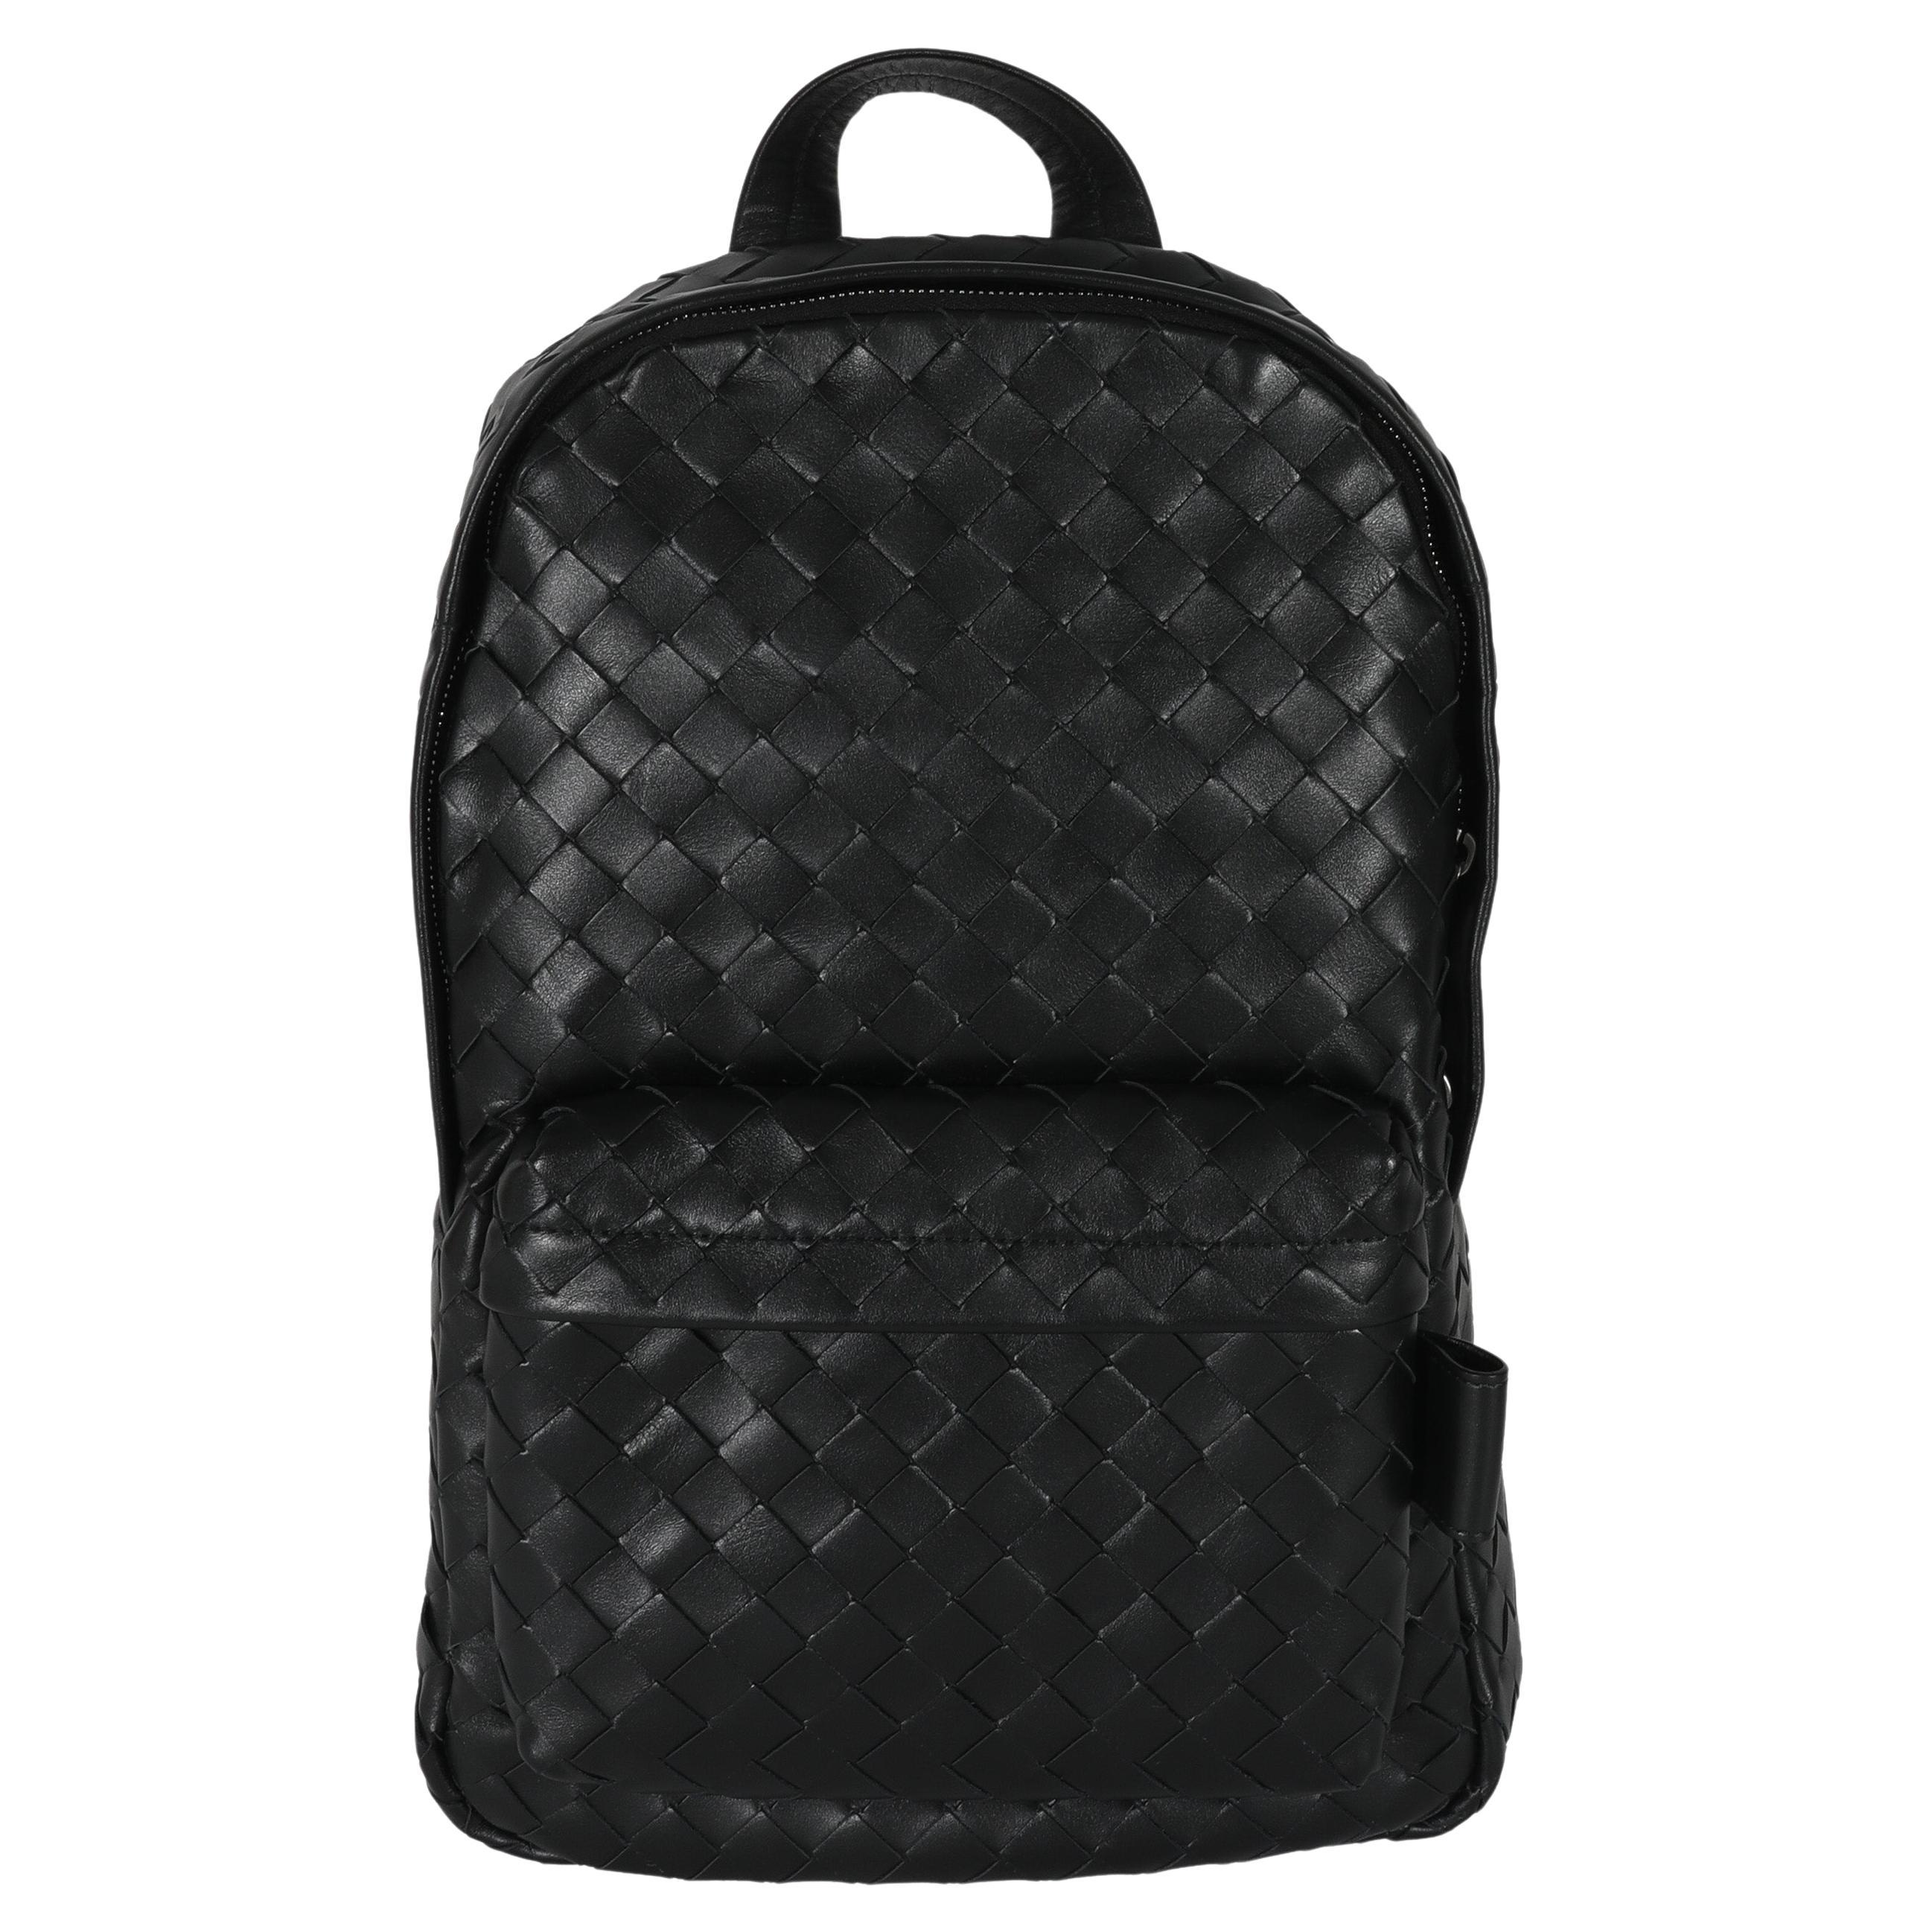 Bottega Veneta Black Calfskin Small Intrecciato Backpack For Sale